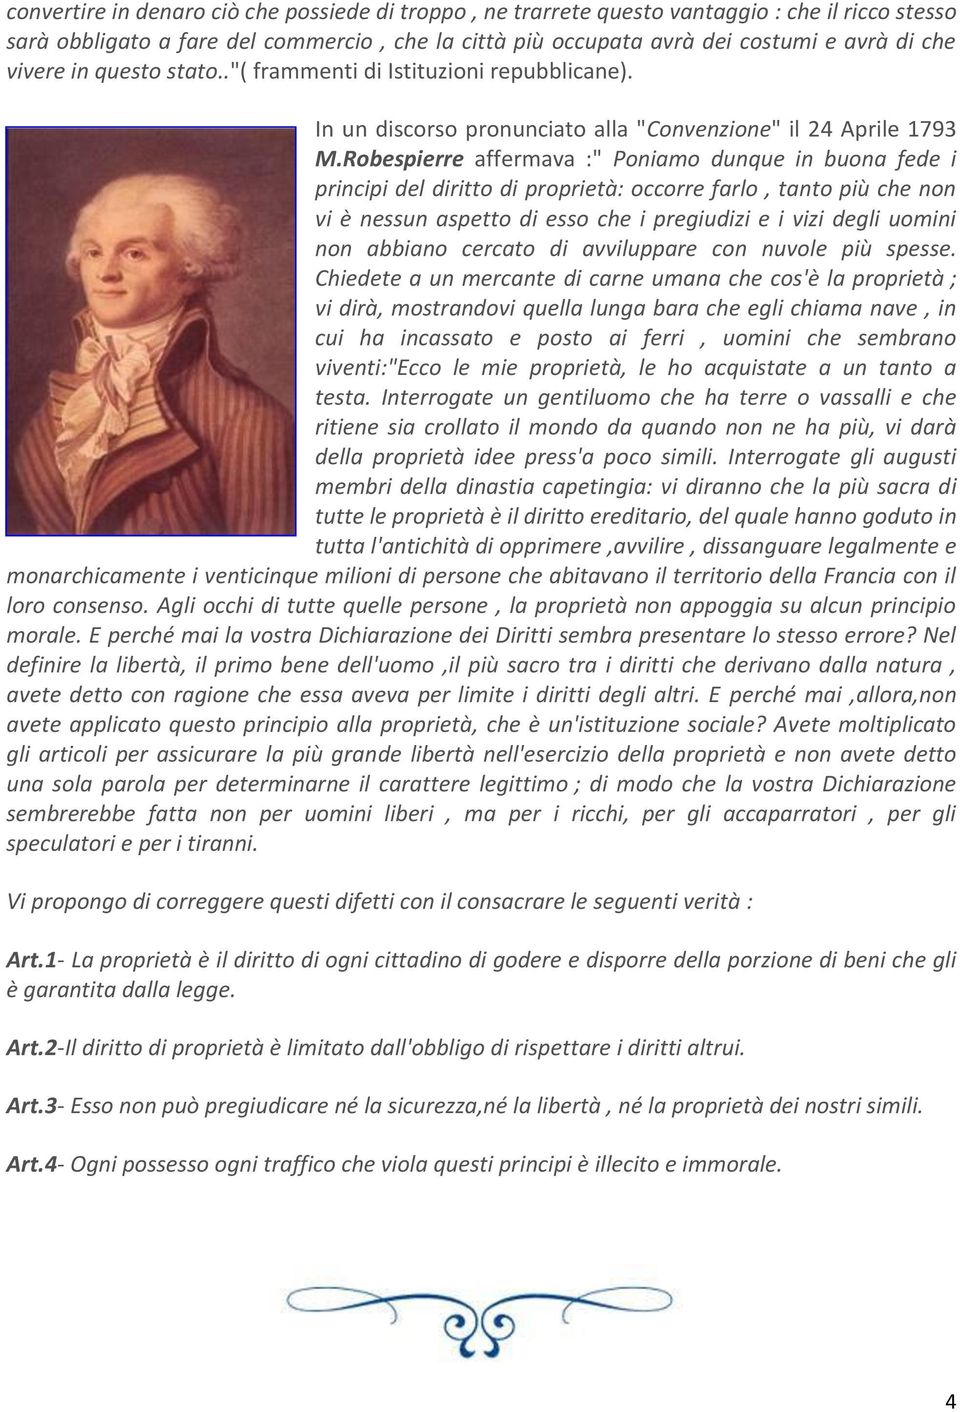 Robespierre affermava :" Poniamo dunque in buona fede i principi del diritto di proprietà: occorre farlo, tanto più che non vi è nessun aspetto di esso che i pregiudizi e i vizi degli uomini non